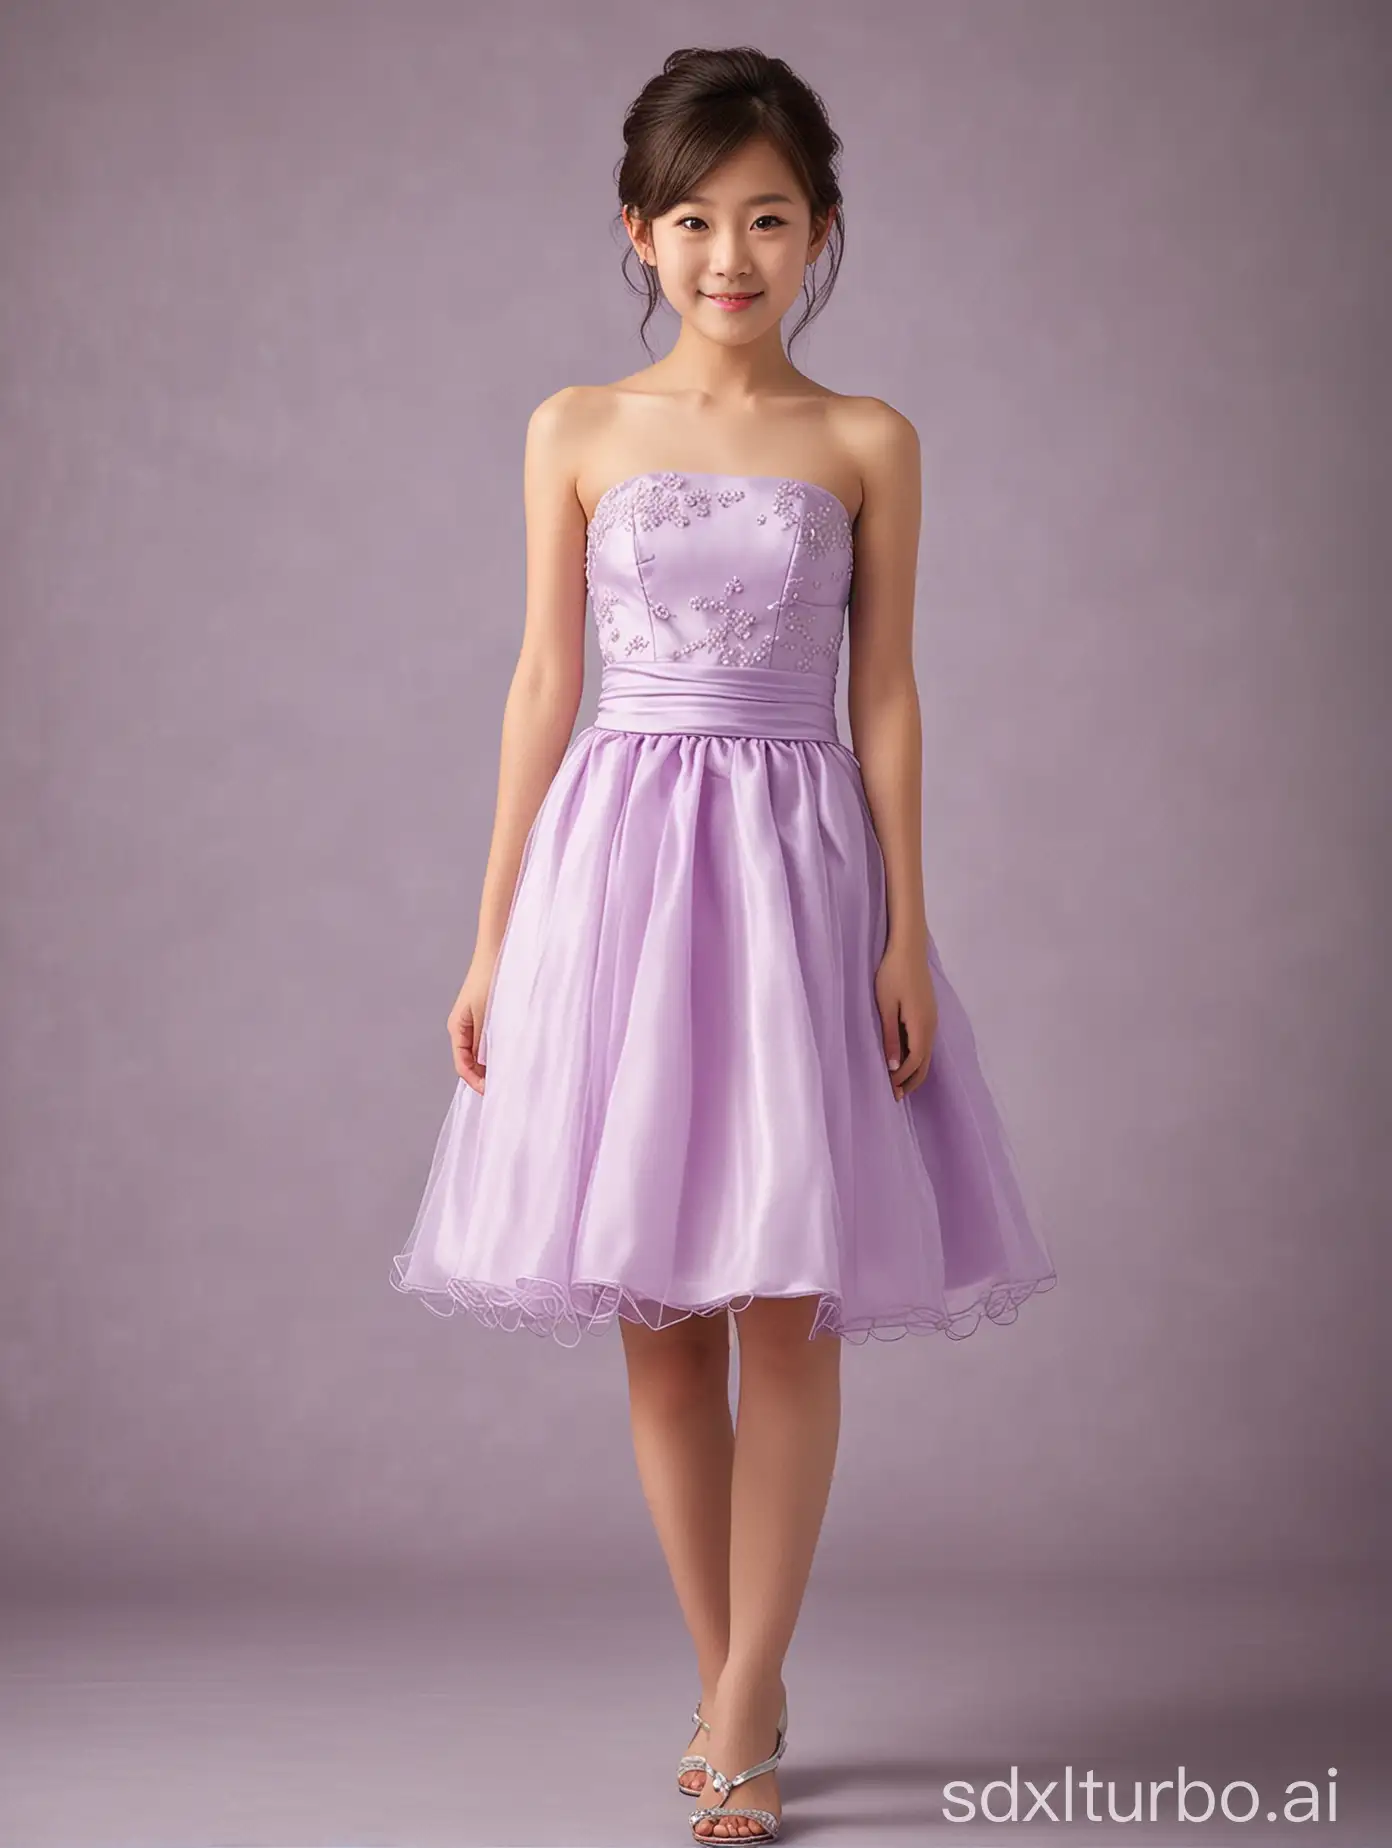 11yo,1girl,Japanese,light purple strapless short wedding dress,full body